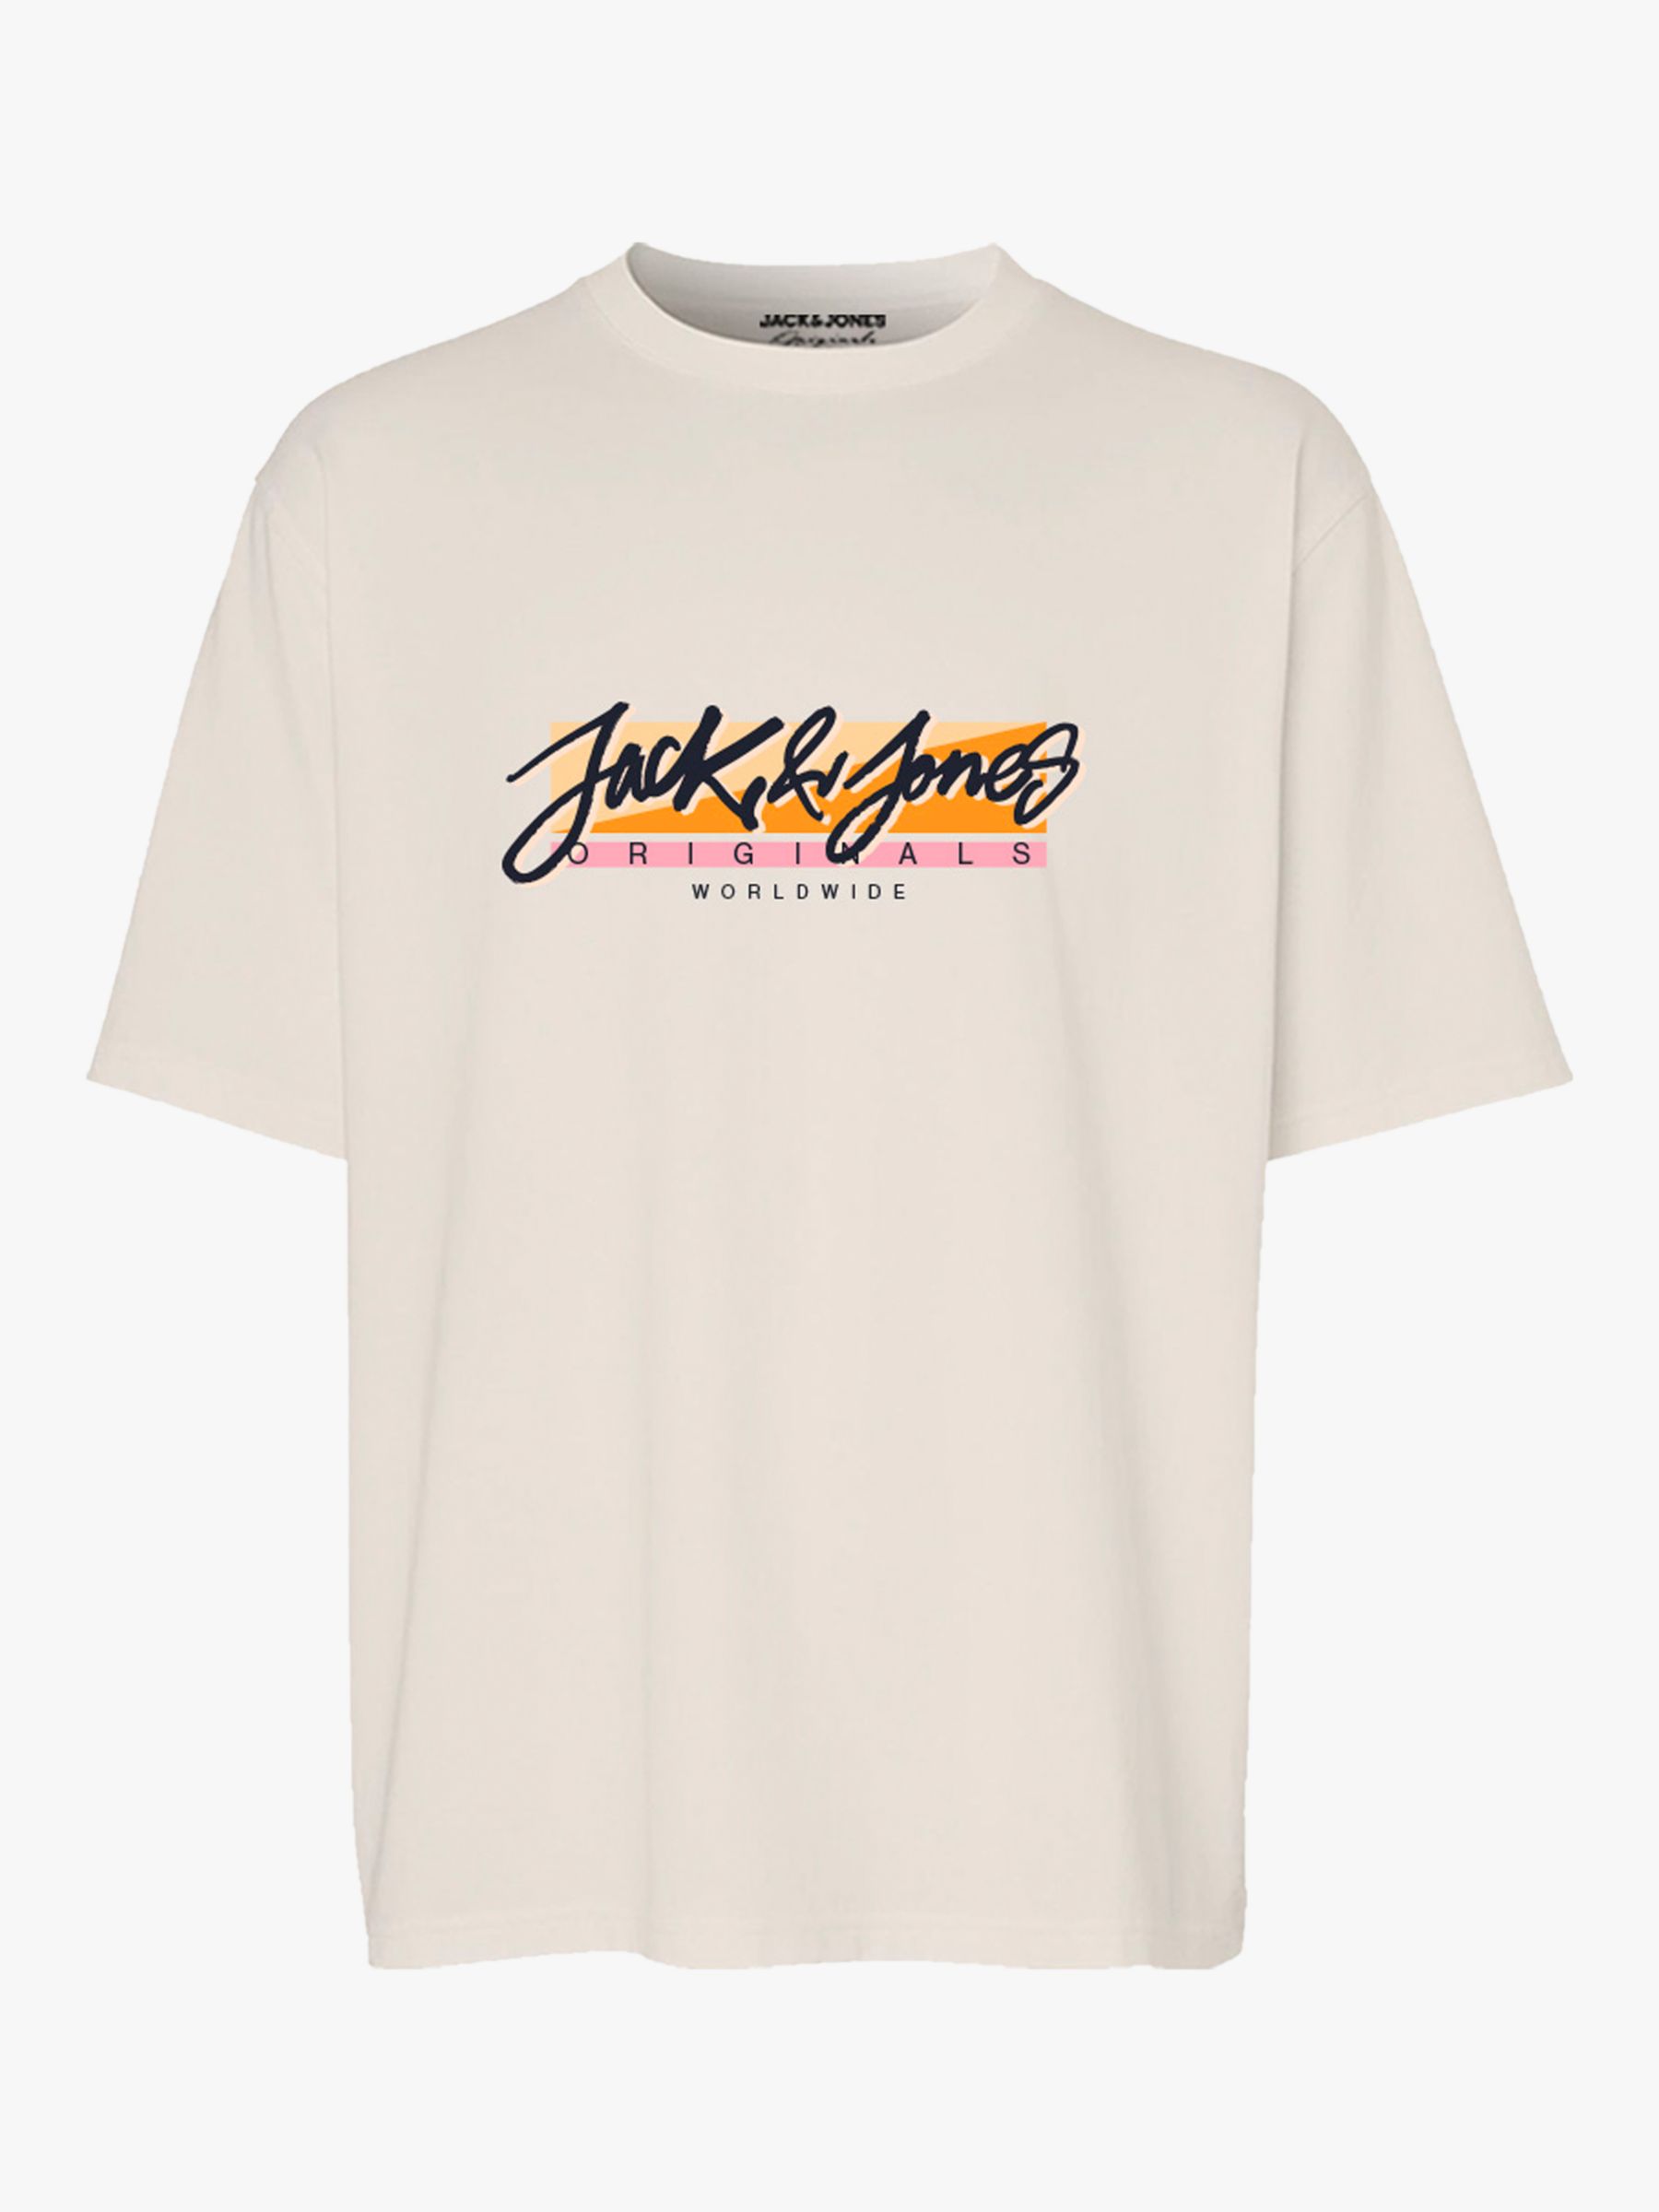 Jack & Jones Kids' Fastrunner 1 Logo T-Shirt, Buttercream, 12 years